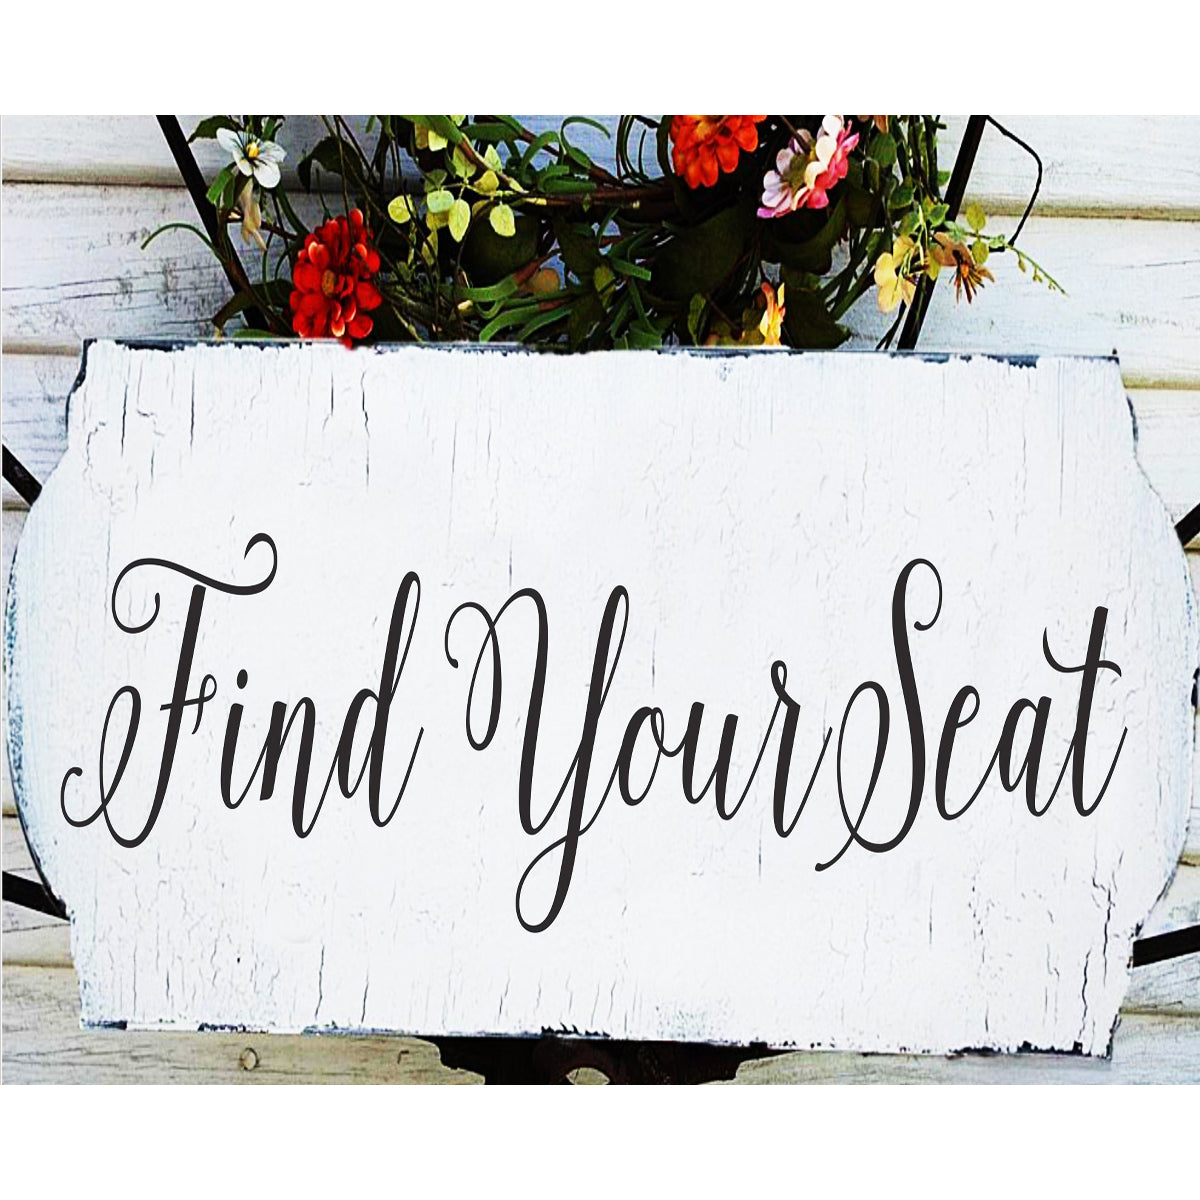 Find Your Seat Stencil - Wedding Stencil - Create Wedding Seating Signs - Superior Stencils